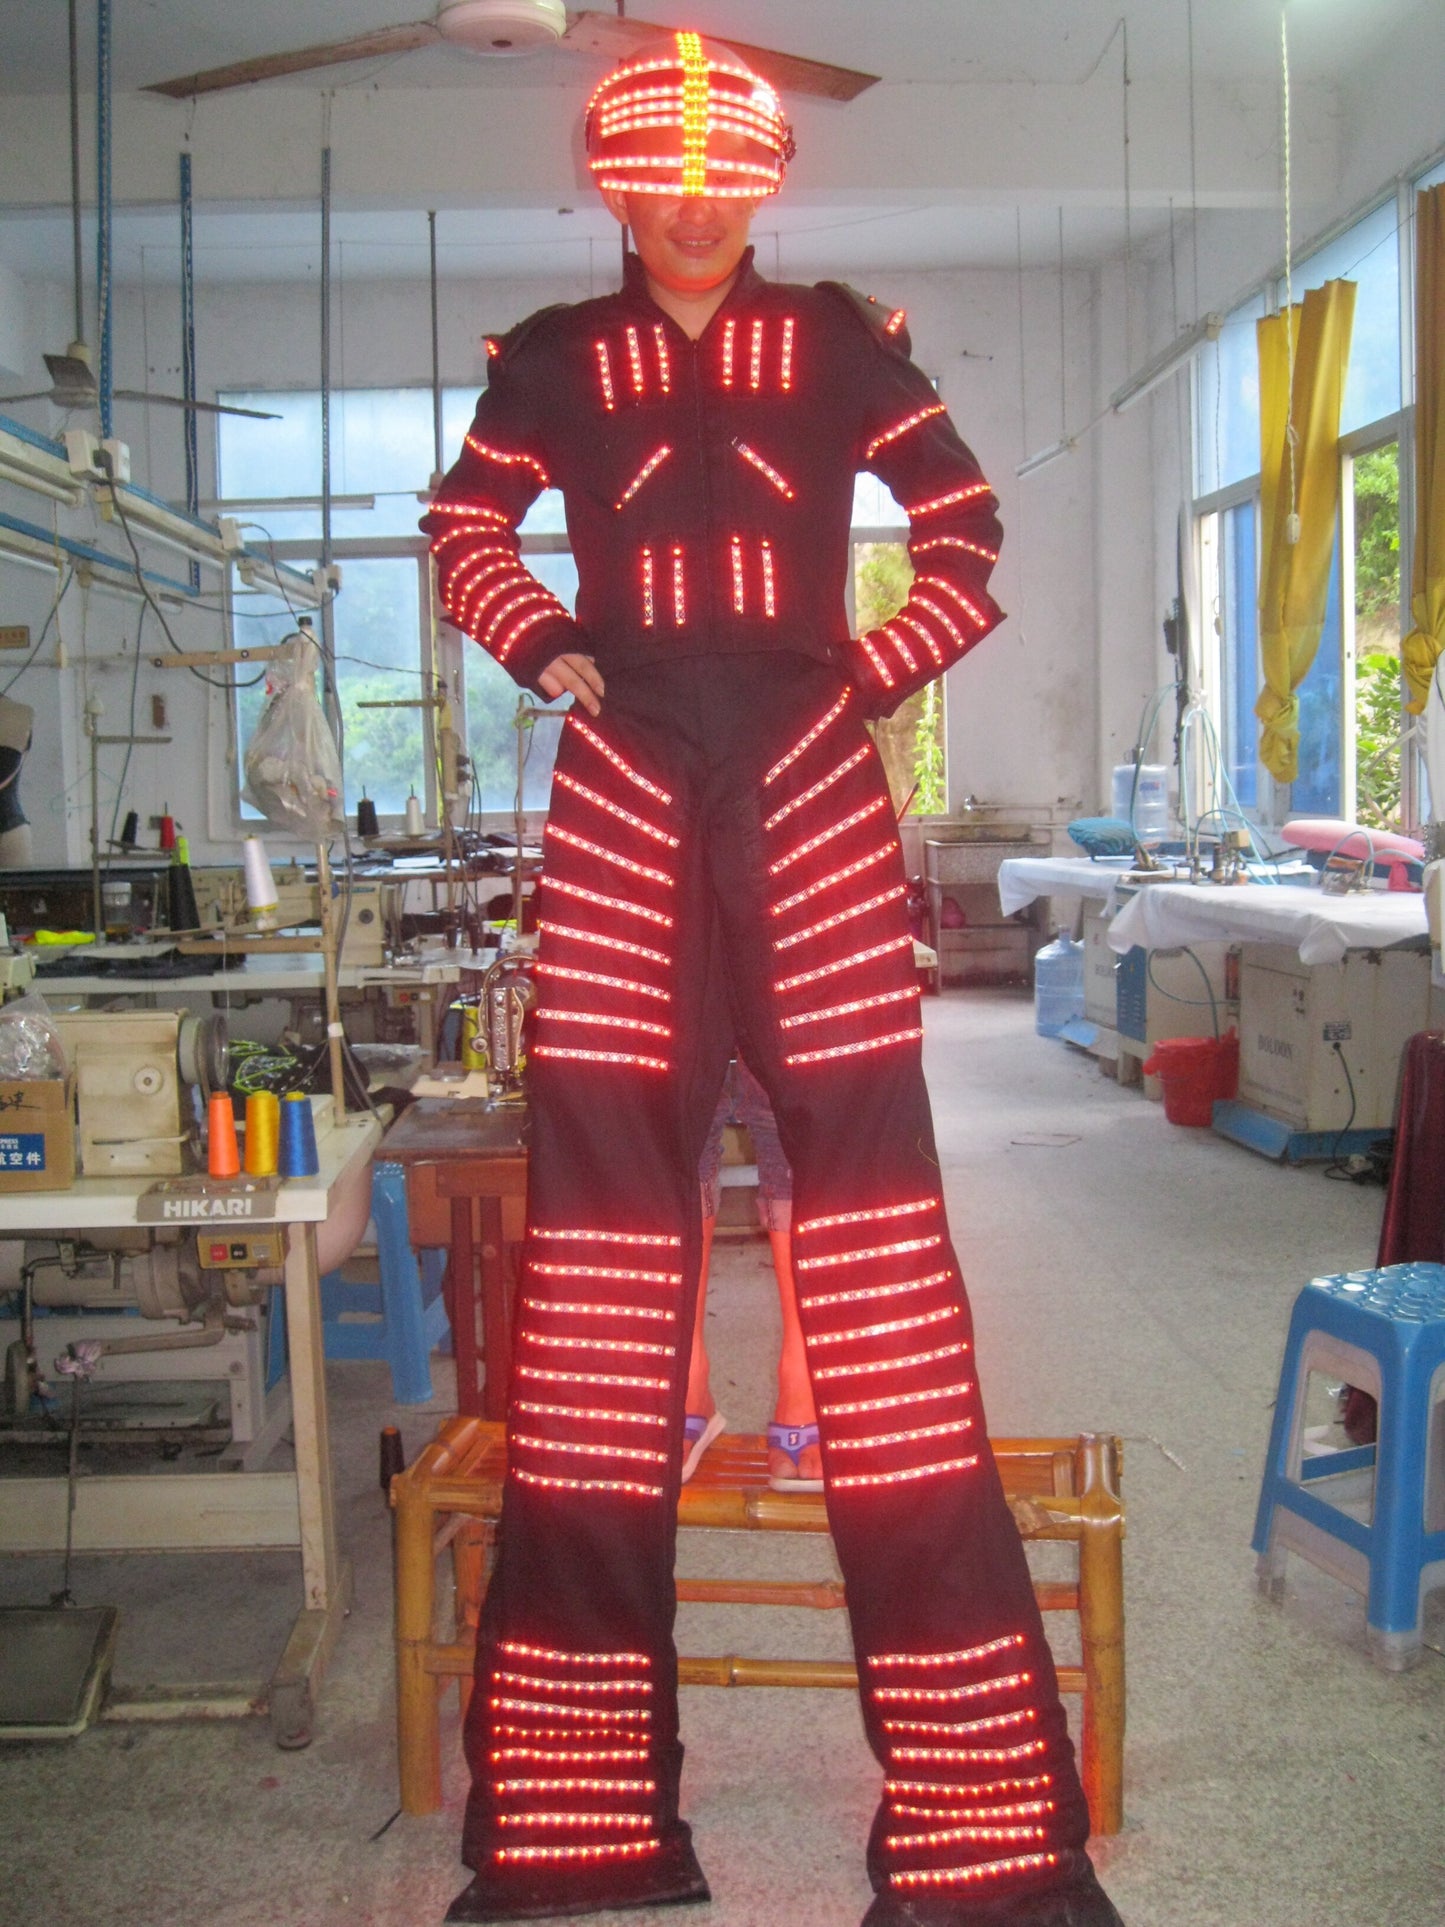 Robot LED / Traje LED / Traje de robot David Guetta / Traje de robot LED / Ropa de robot